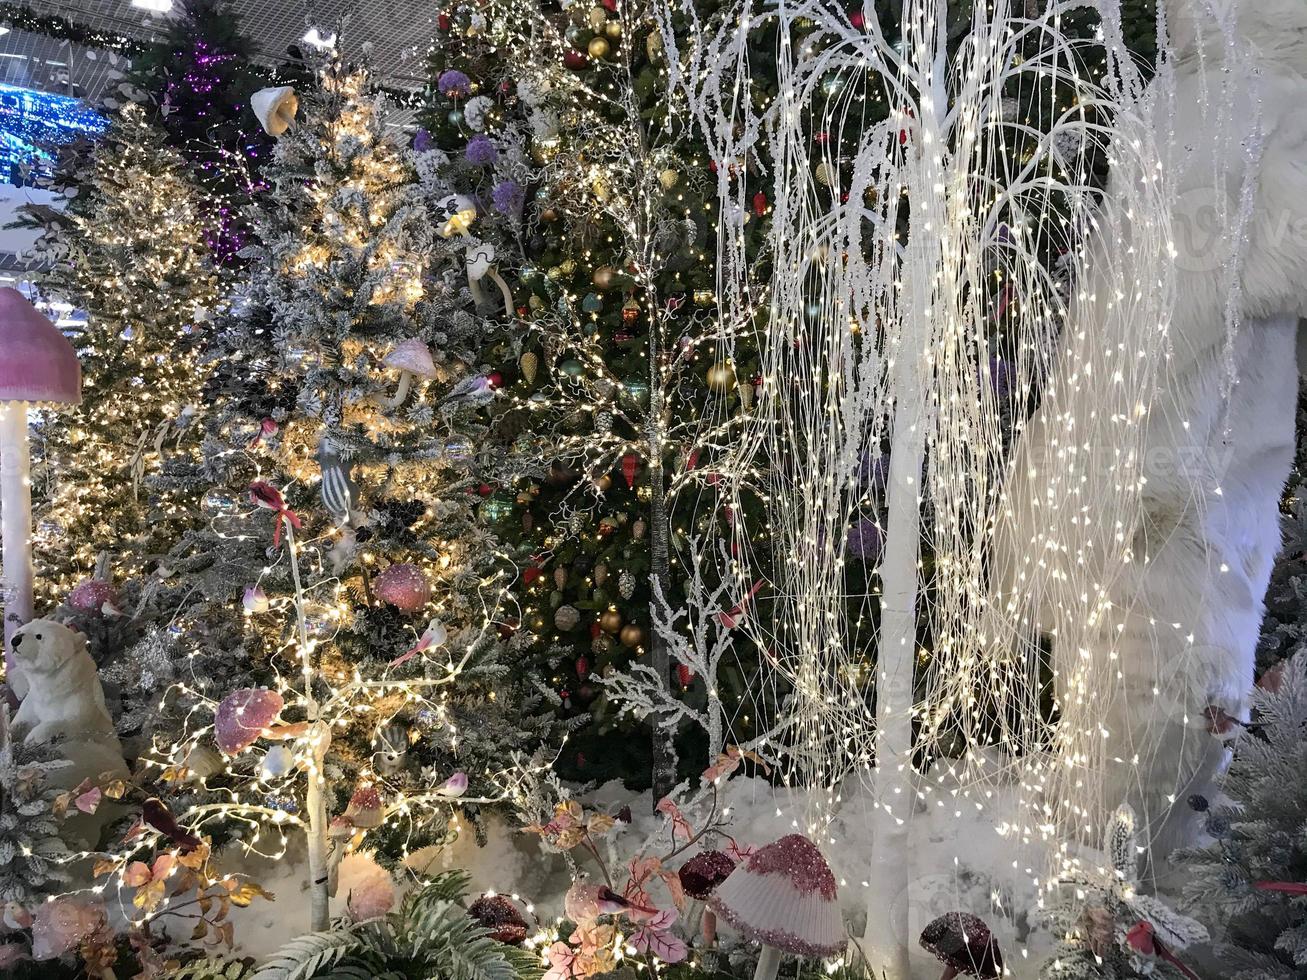 decorações de ano novo para o centro comercial. árvores de natal artificiais cobertas de neve. em um monte de neve ursos, esquilos e furões. véspera de Natal foto